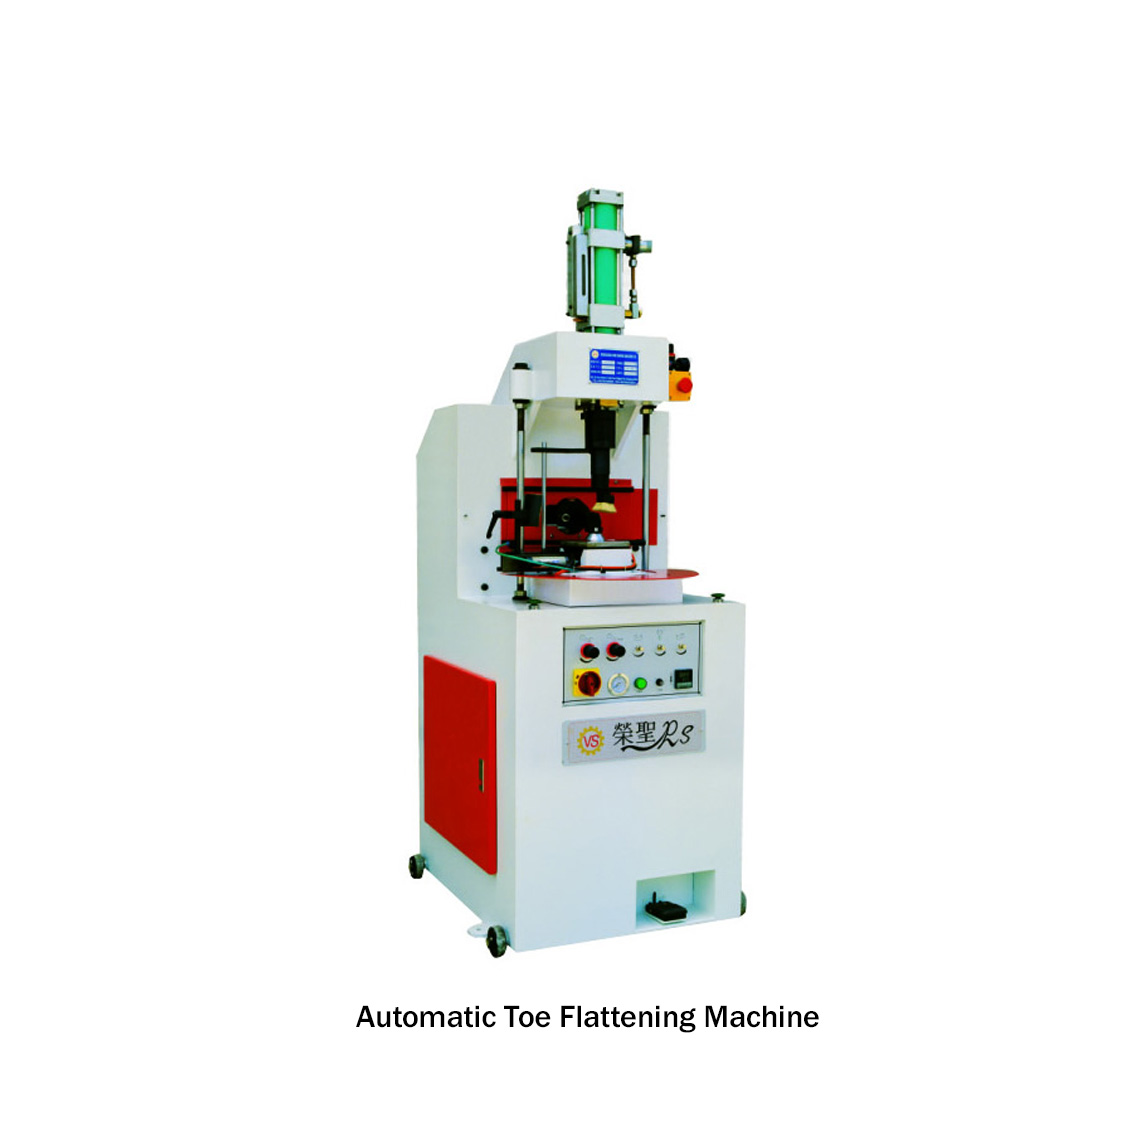 Automatic Toe Flattening Machine